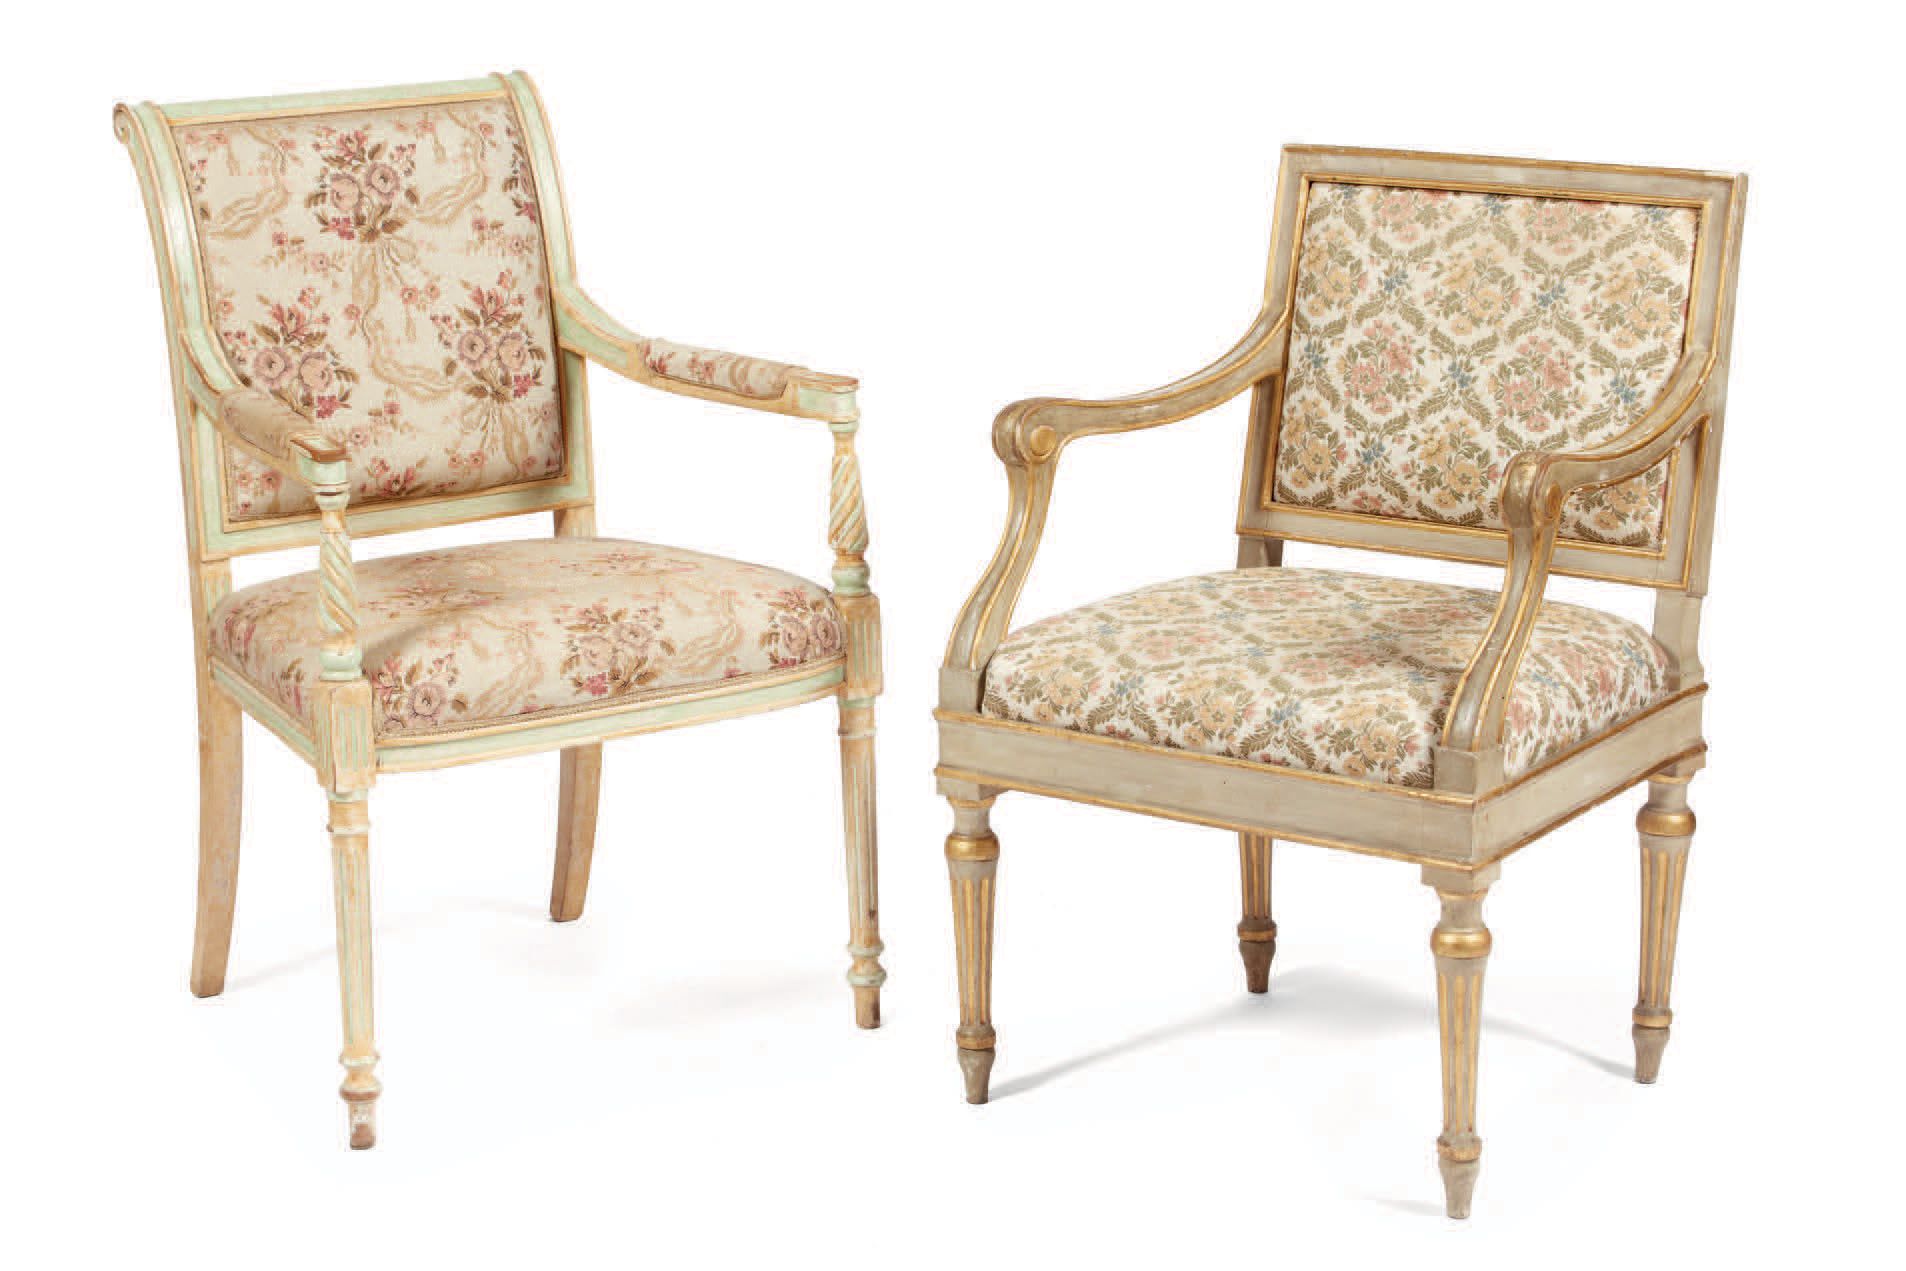 Null 两把奶油色和金色漆面的木制扶手椅，椅背和椅座上覆盖着装饰有花卉图案的织物，意大利，19世纪
Deux fauteuils en bois laqué &hellip;